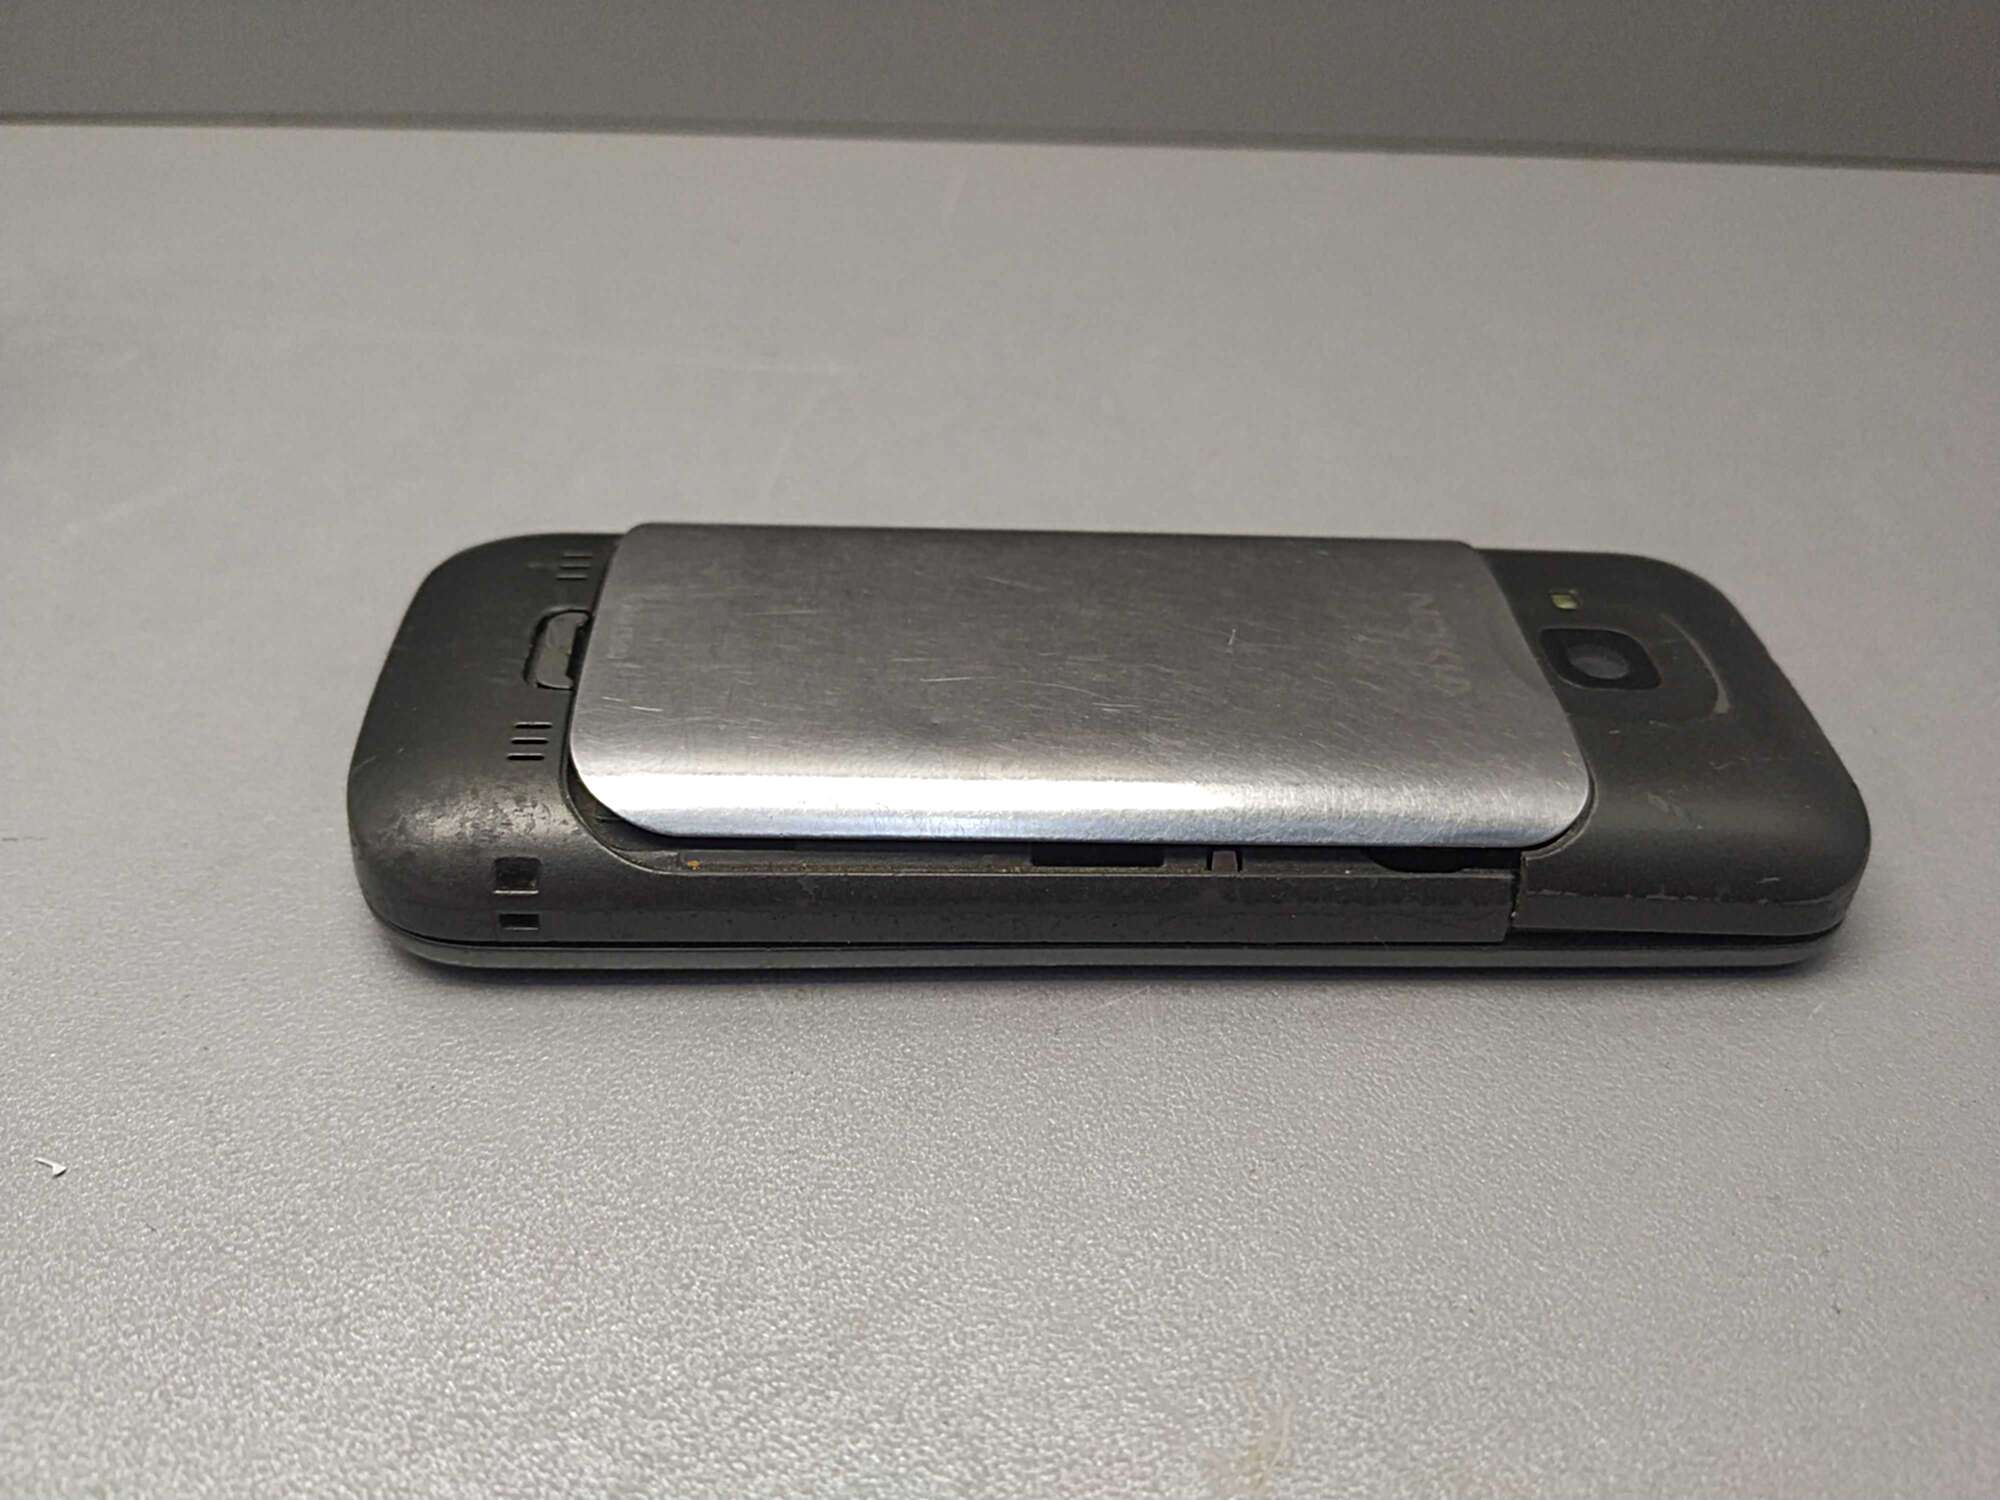 Nokia C5-00 3